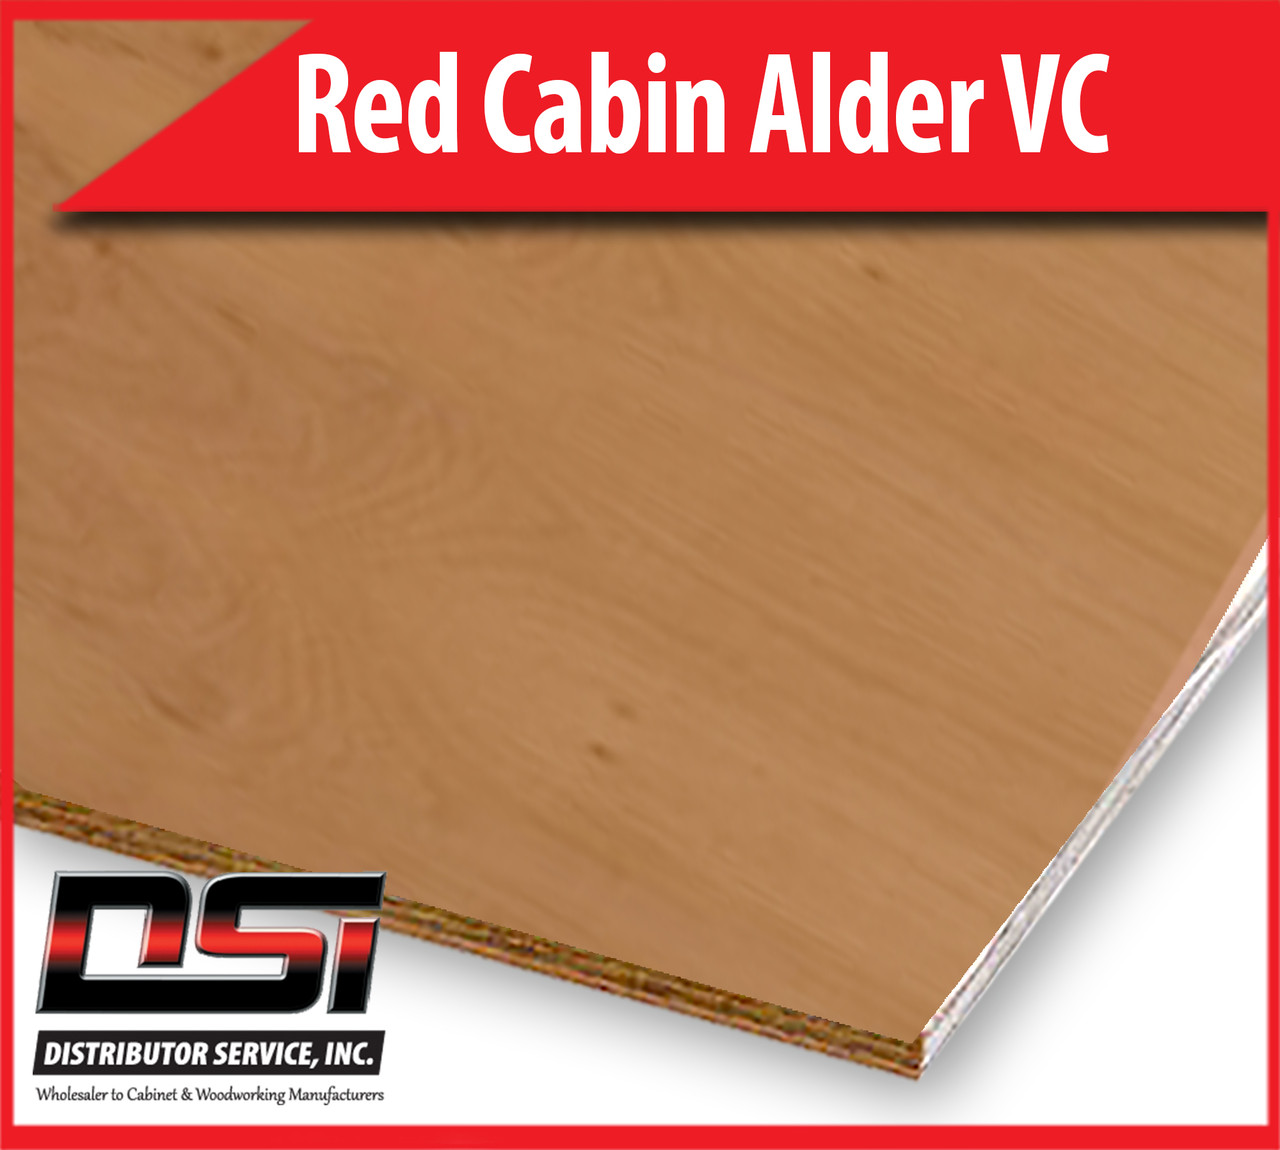 Red Cabin Alder Plywood Veneer Core G1S 1/4" x 4x8